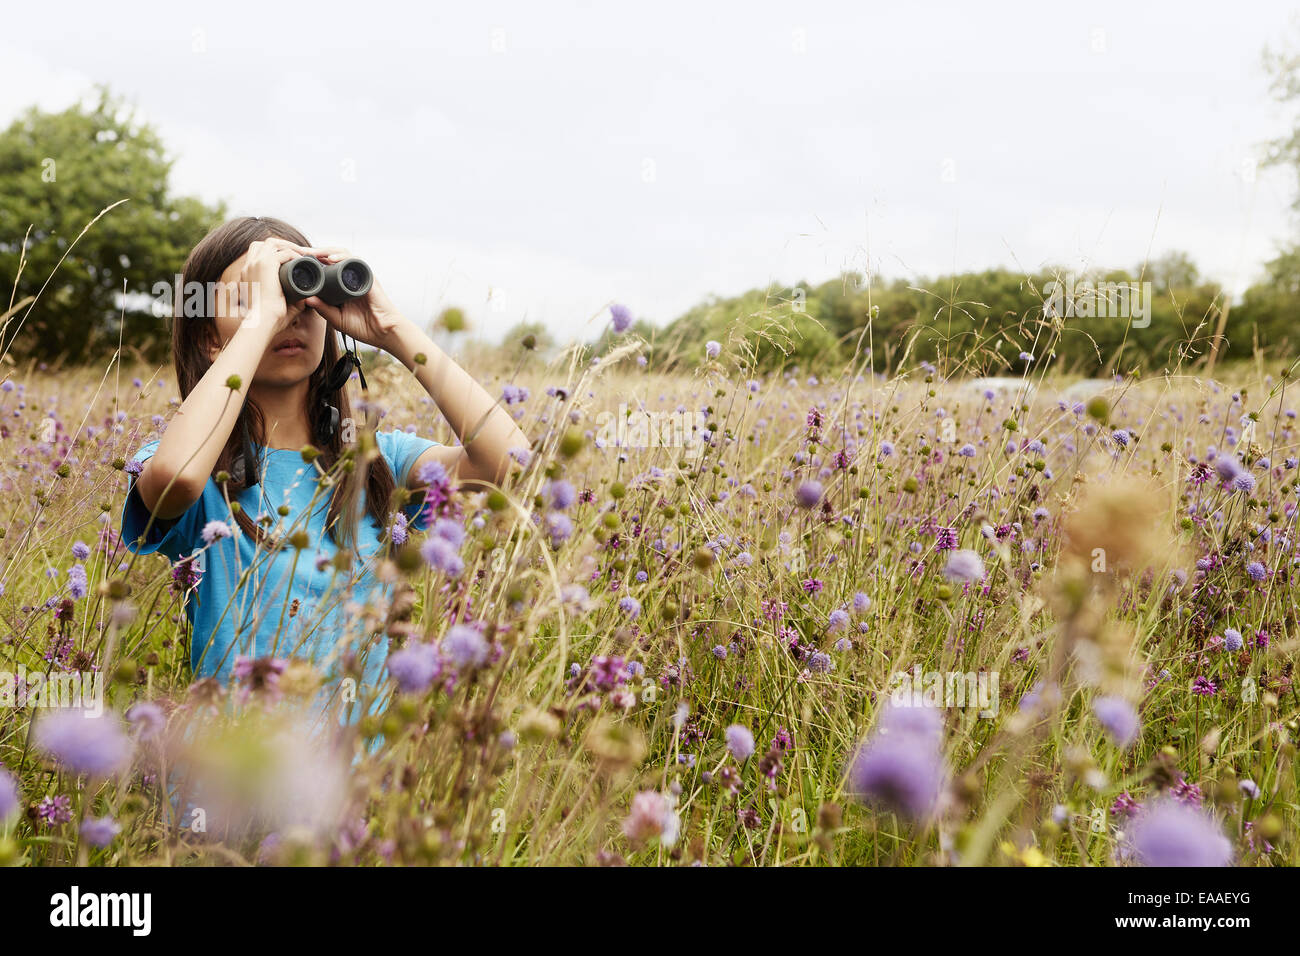 Ein Mädchen mit Fernglas, ein junger Vogelbeobachter stehen auf einer Wiese hohe Gräser und Wildblumen. Stockfoto